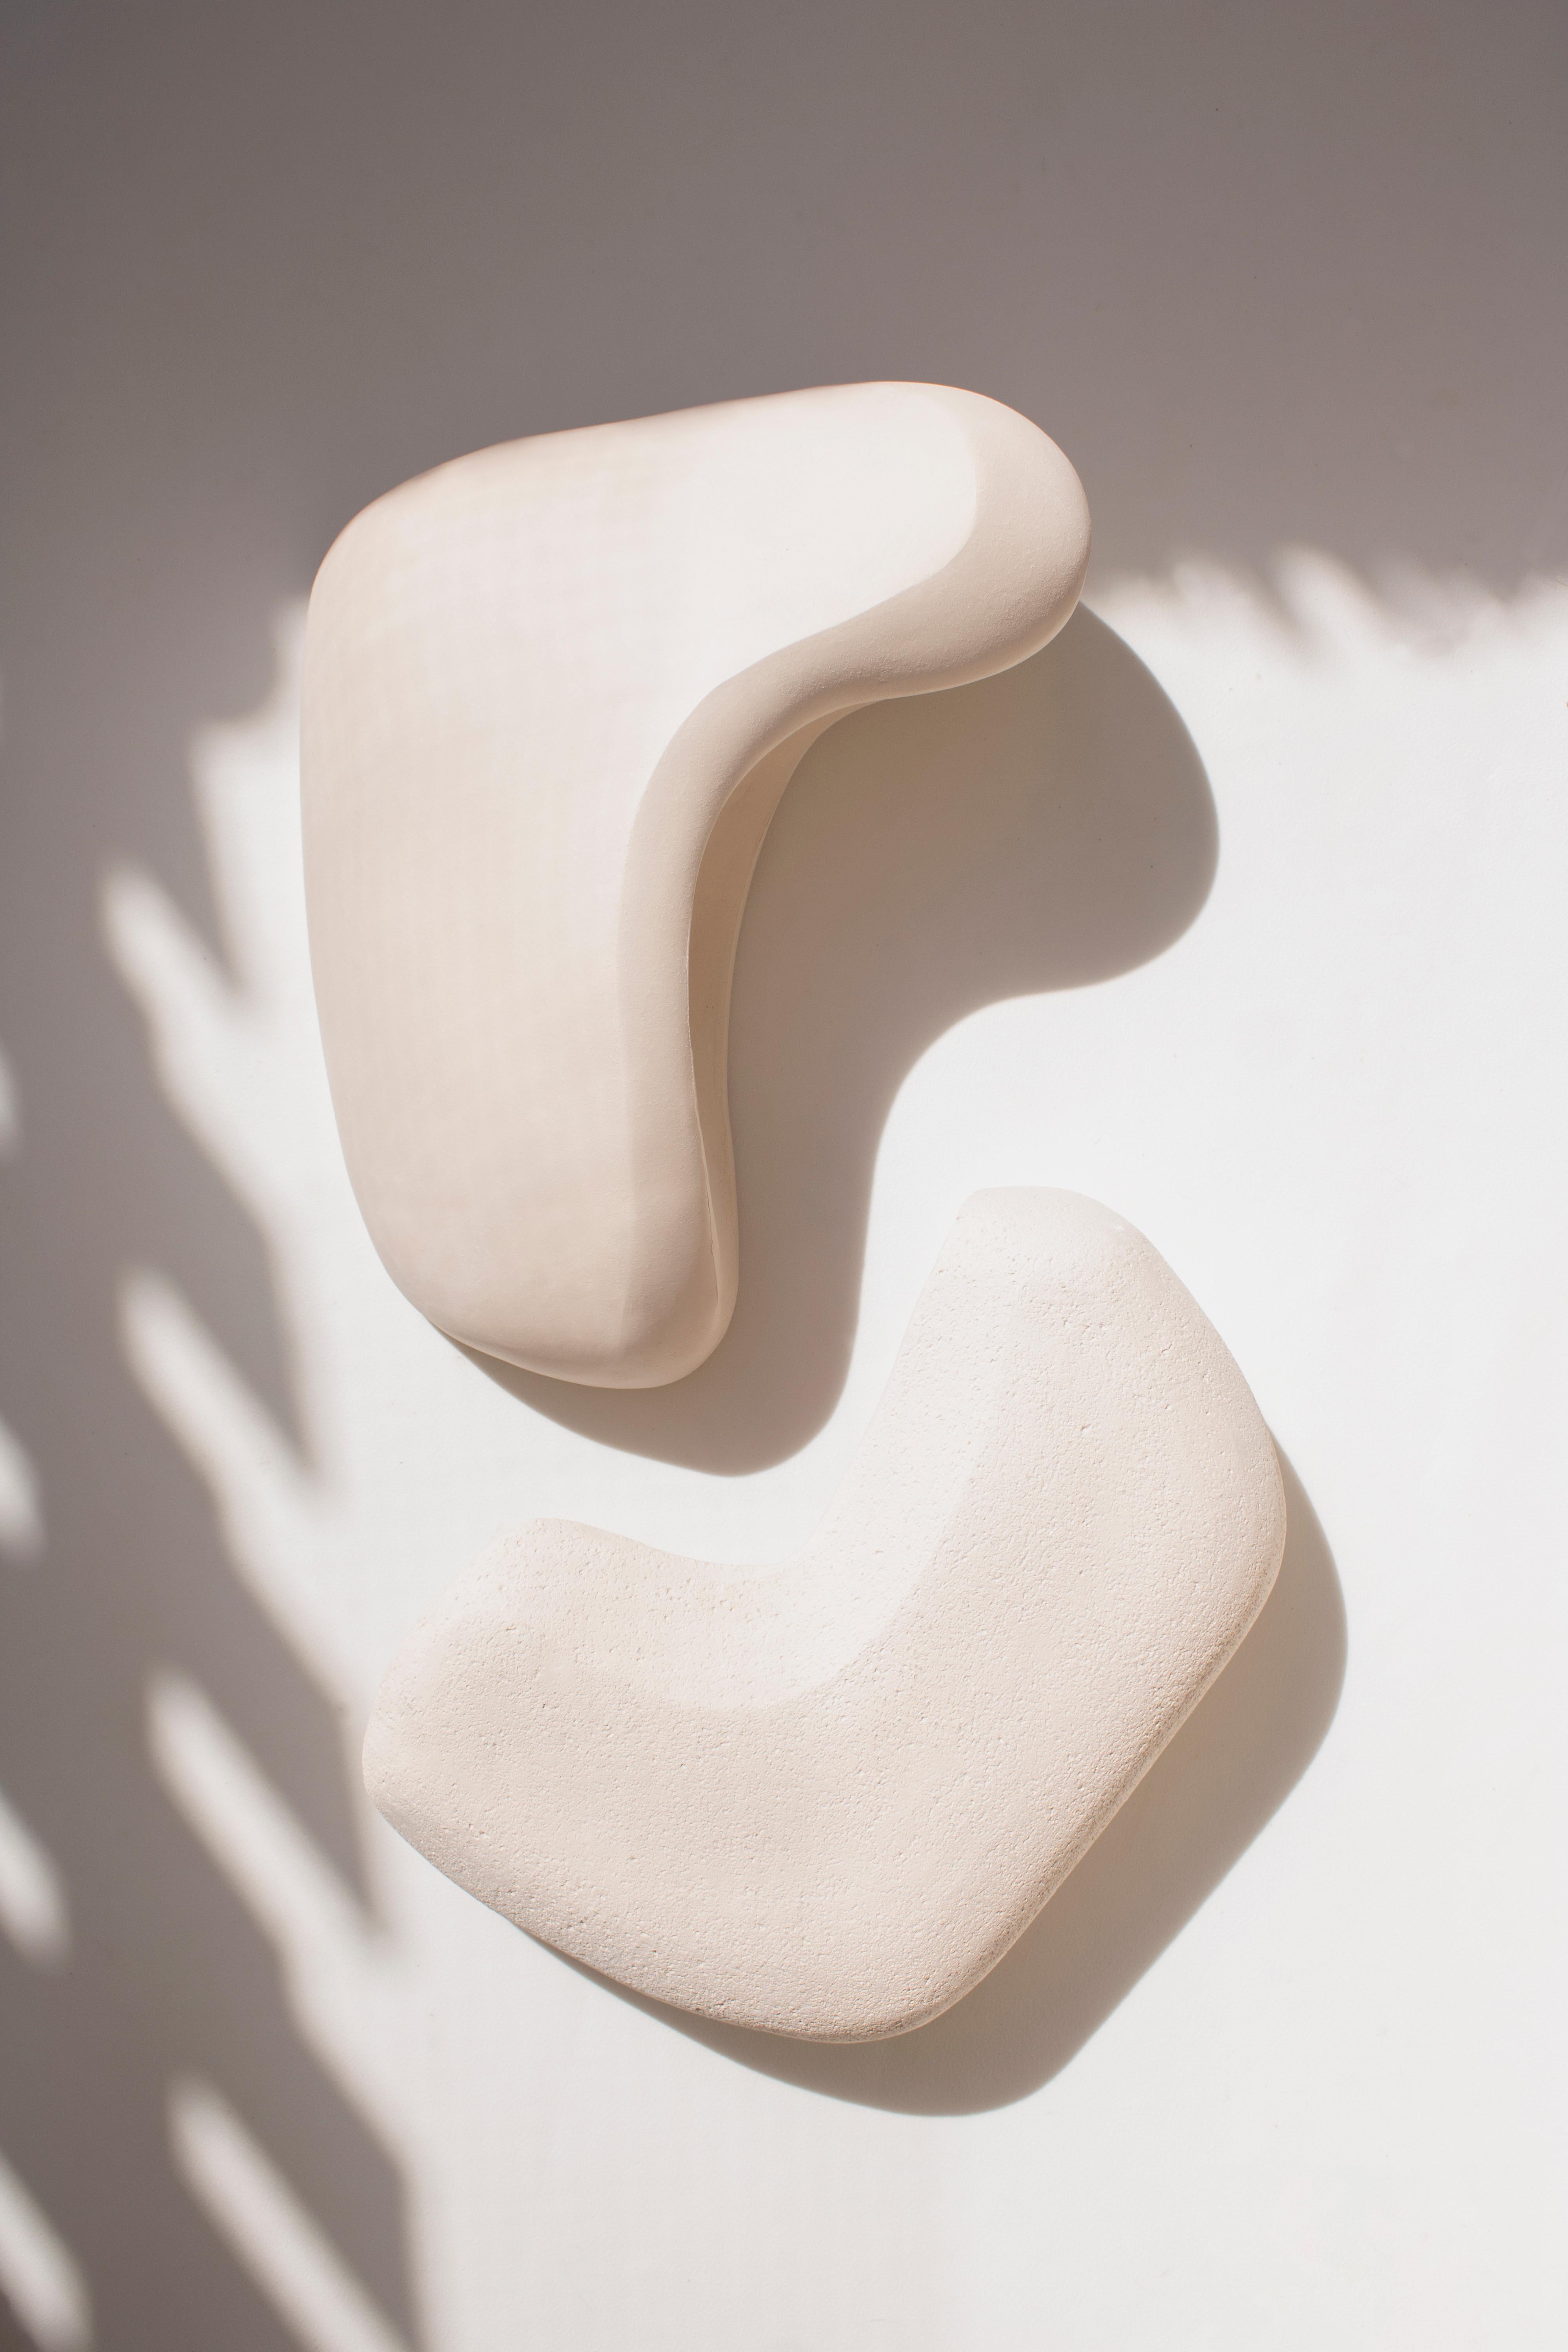 Form No.007 est un ensemble d'appliques sculpturales en céramique de la Collection Forms. La pièce est méticuleusement fabriquée à la main pour explorer l'harmonie de l'asymétrie. Son attrait unique réside dans ses contours abstraits et sa forme